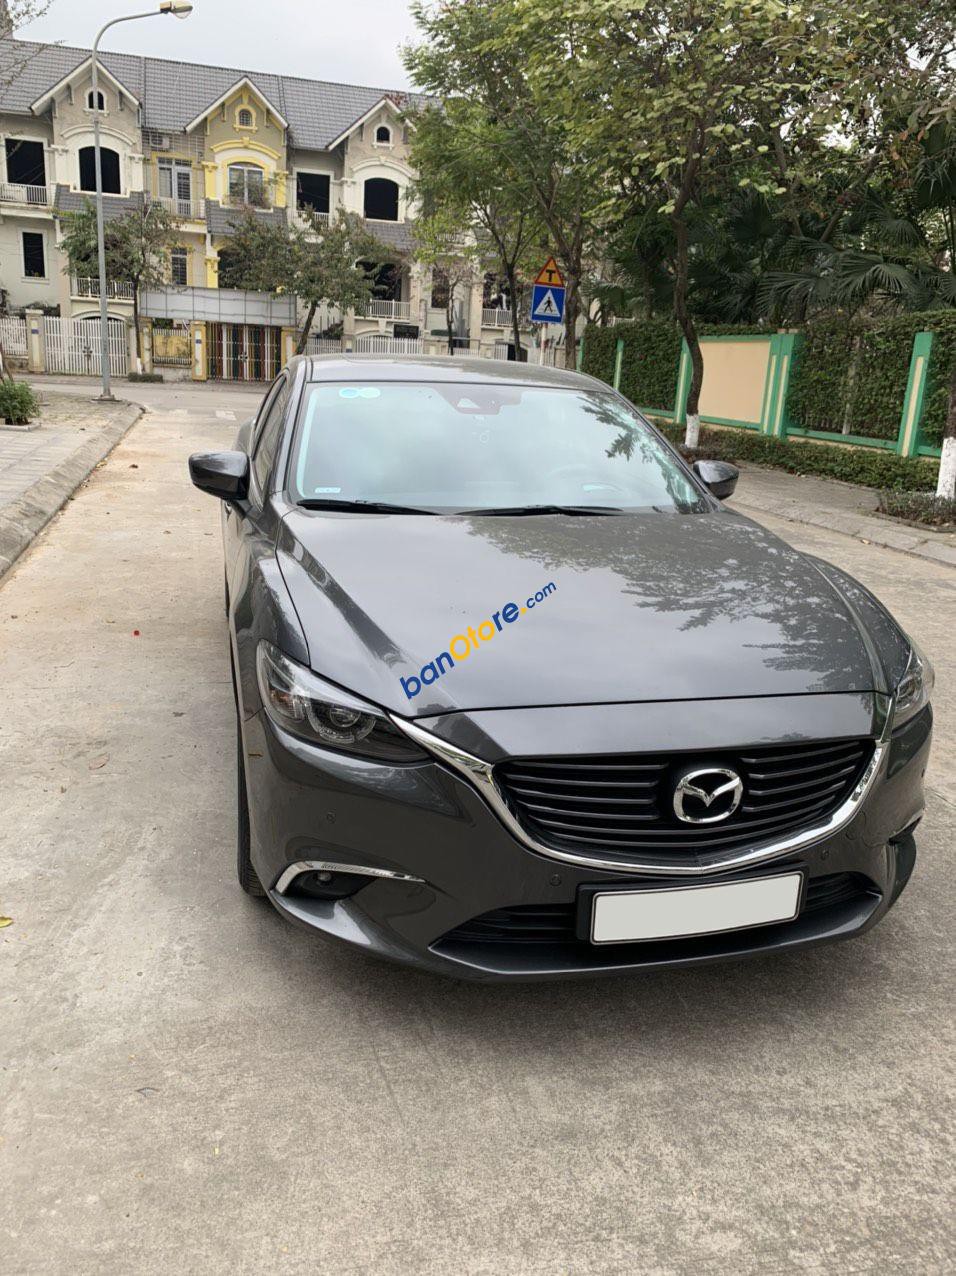 Mazda 6 2019 - Màu Xám - Biển Hà Nội